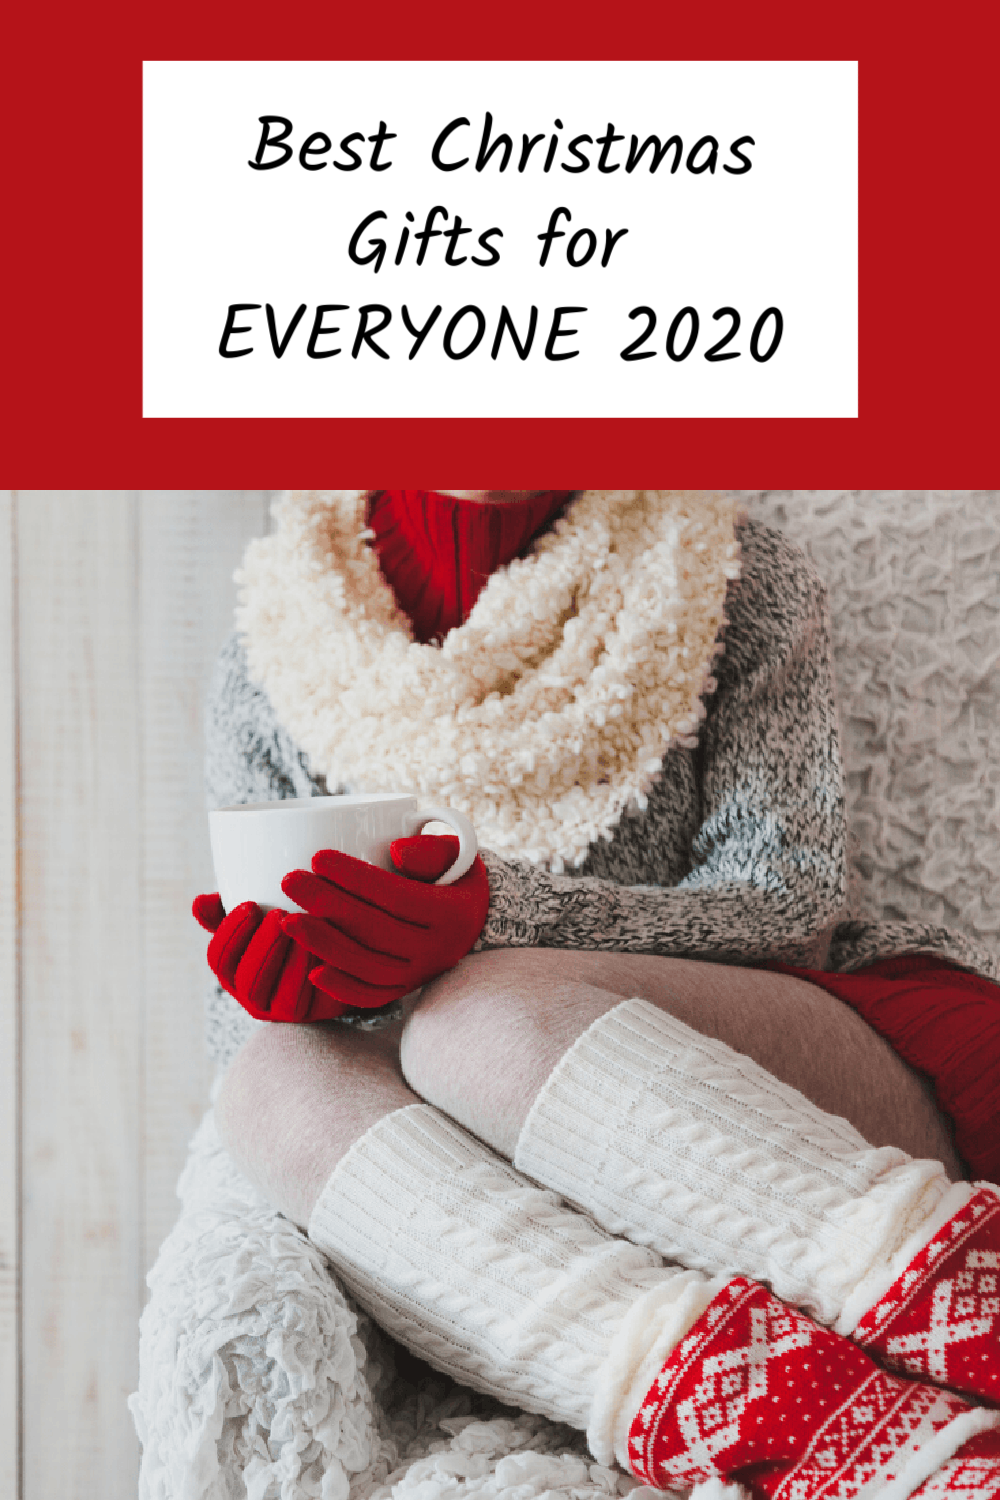 Christmas Gift Guide 2020